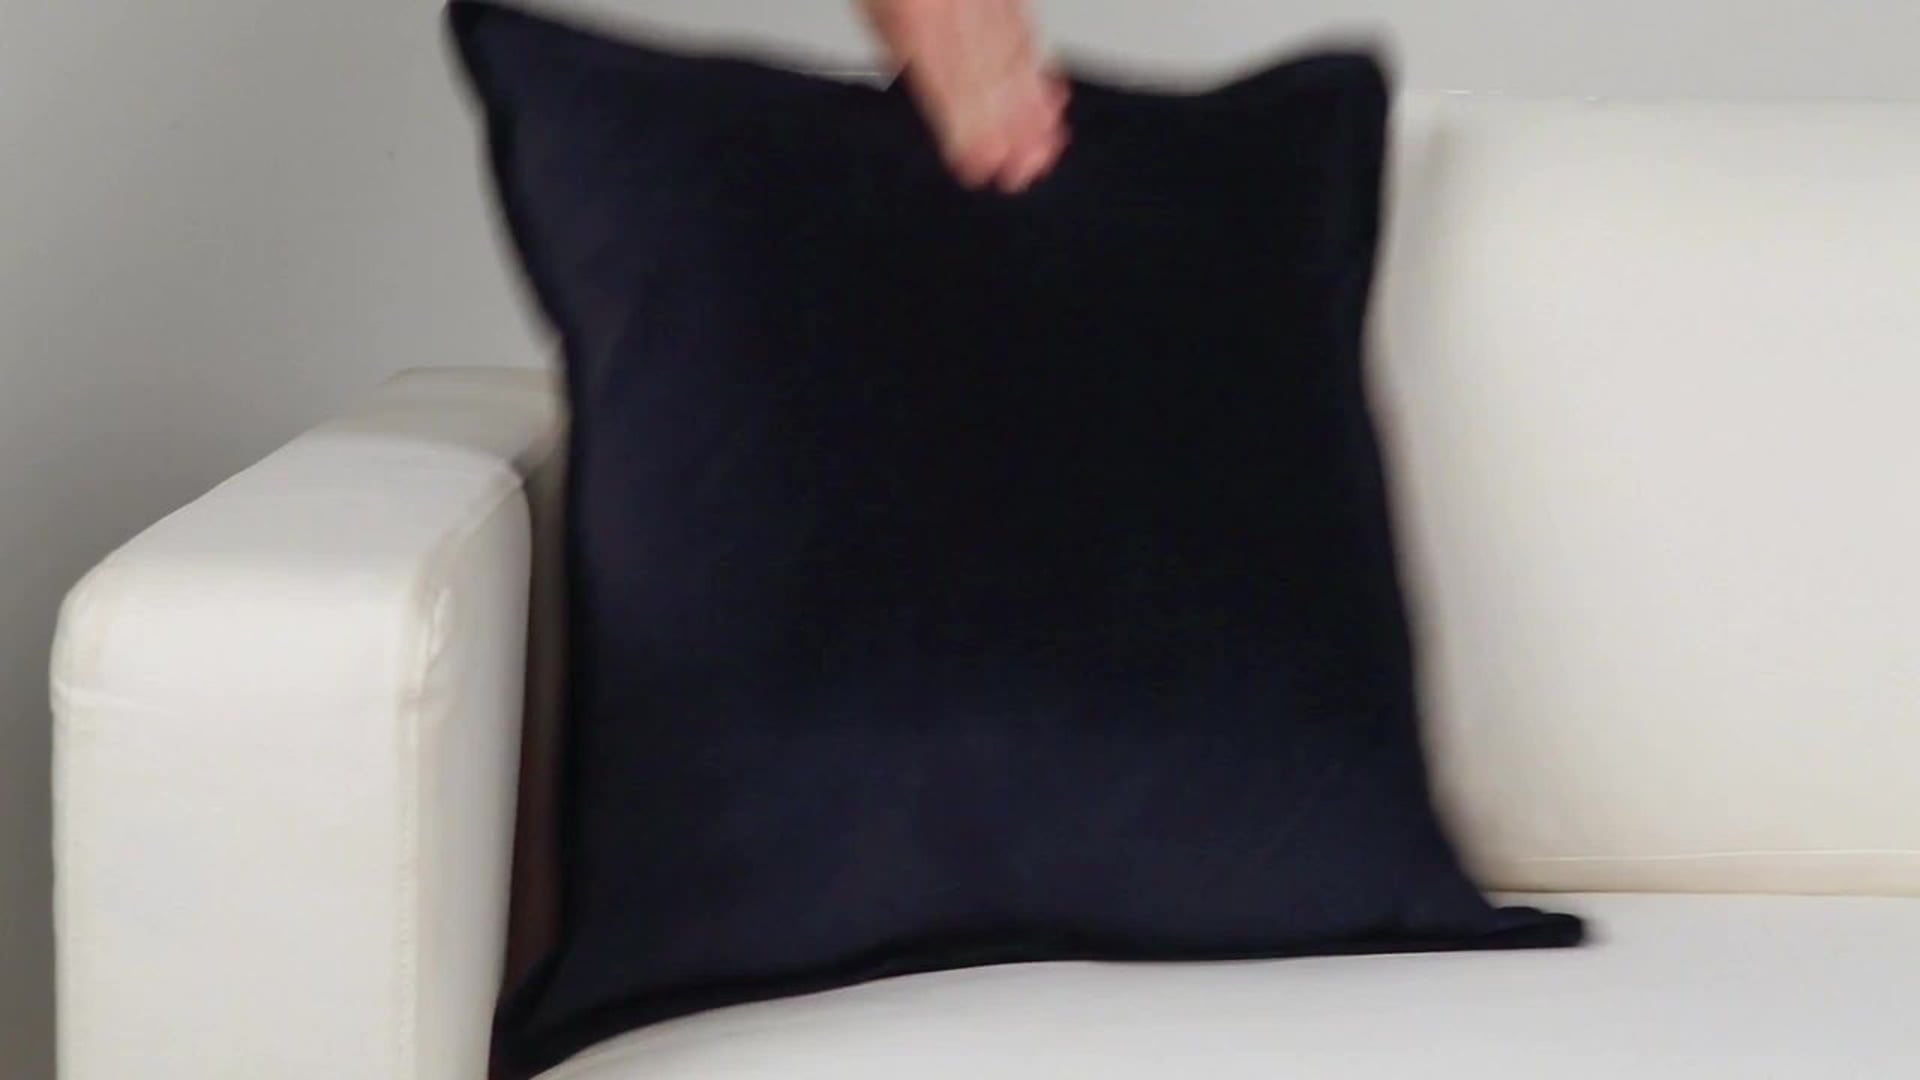 Cotton Velvet Pillow Cover 22x22x0.25